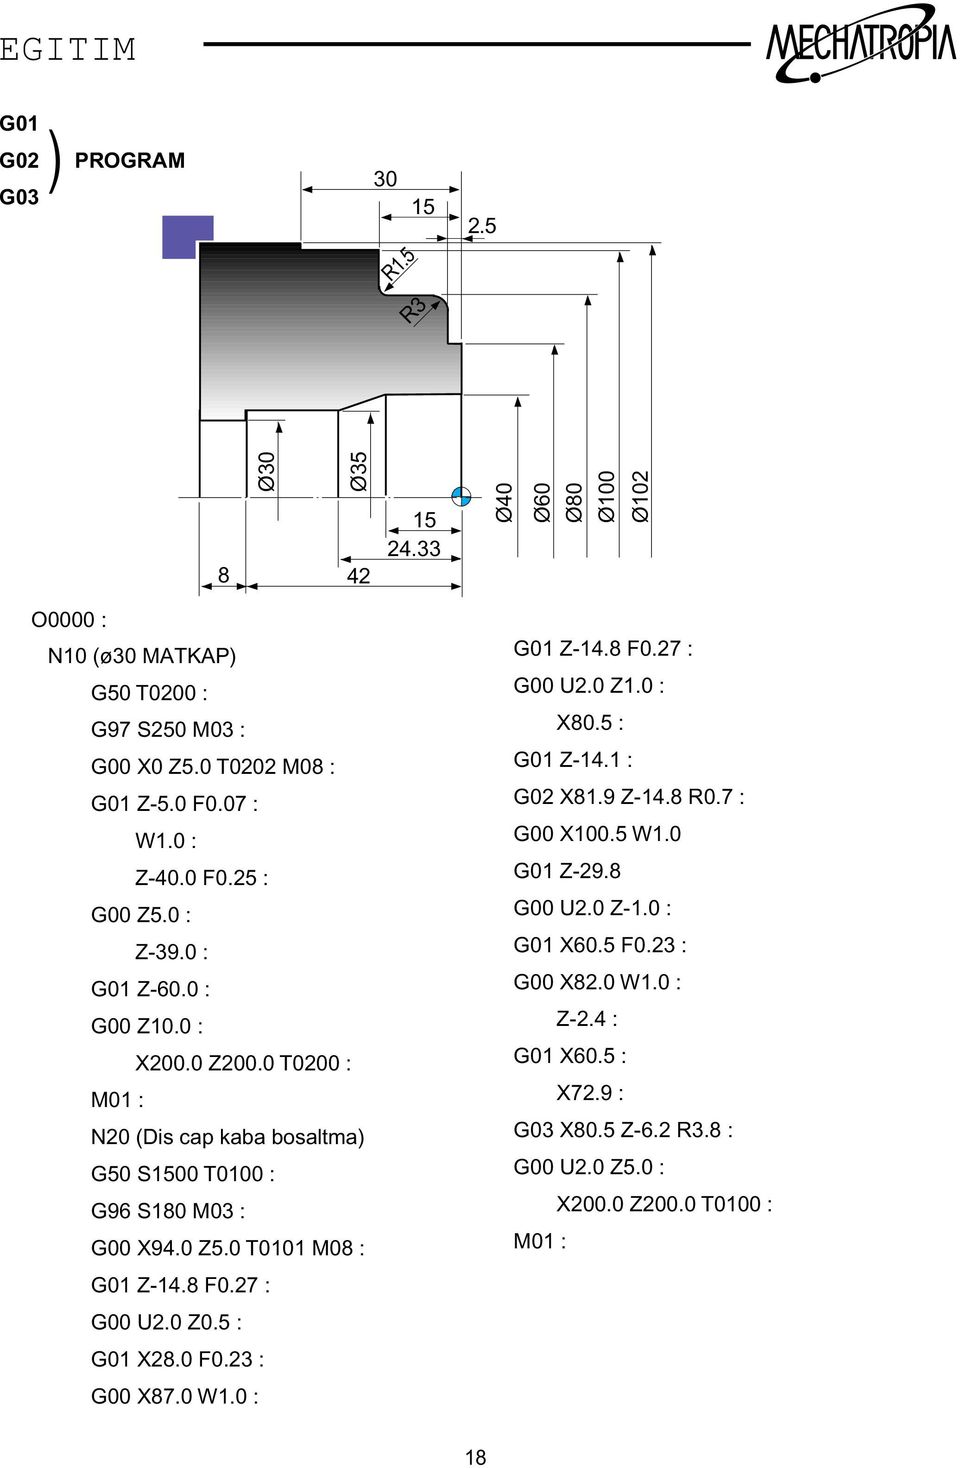 0 T0200 : M01 : N20 (Dis cap kaba bosaltma) G50 S1500 T0100 : G96 S180 M03 : G00 X94.0 5.0 T0101 M08 : G01-14.8 F0.27 : G00 U2.0 0.5 : G01 X28.0 F0.23 : G00 X87.